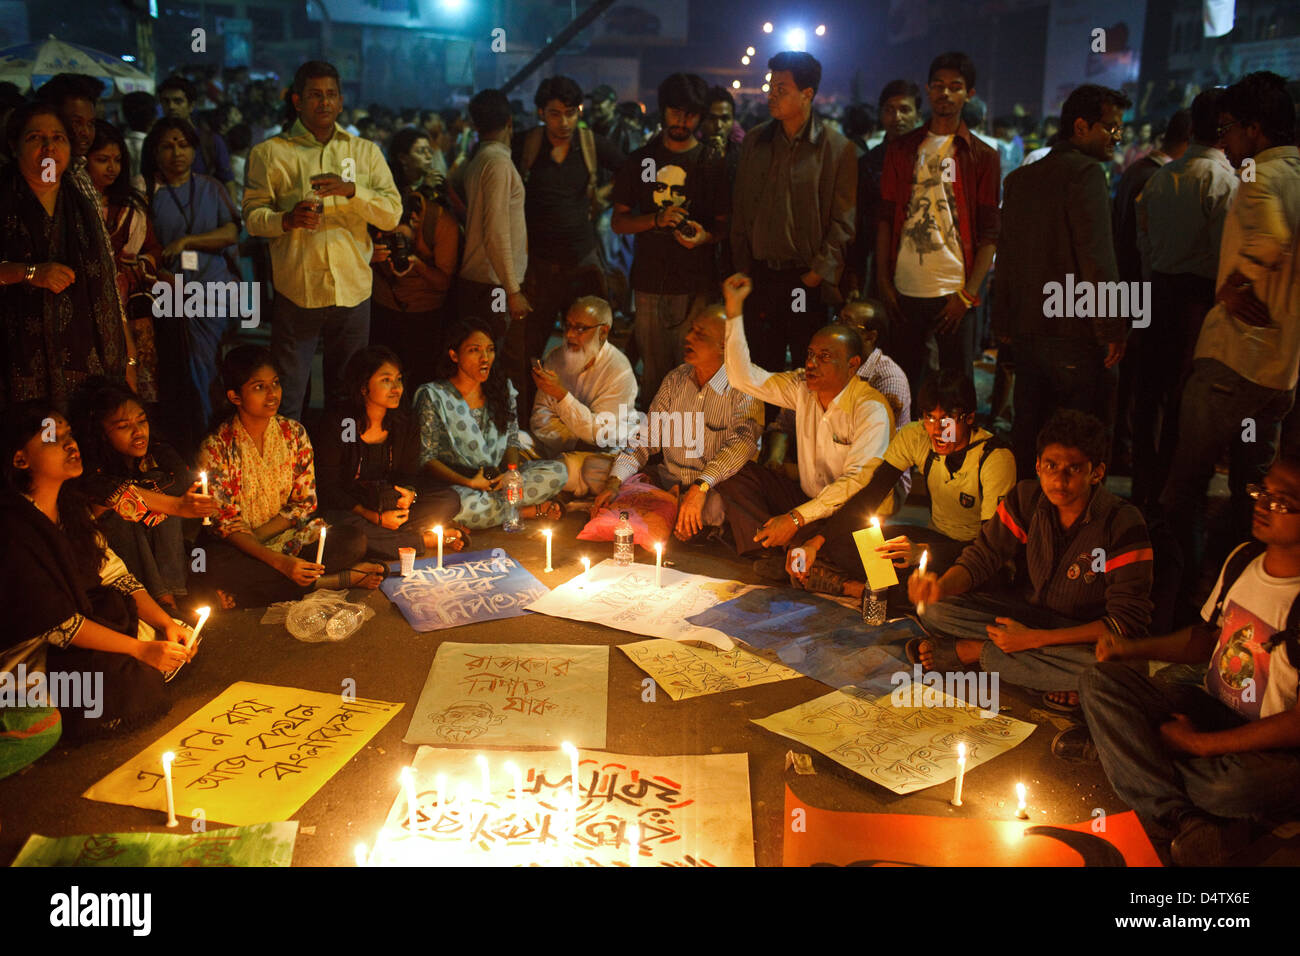 Los manifestantes en la noche en el Shahbagh Shahbag (intersección) sitio de protesta en Dhaka, Bangladesh, en febrero de 2013. Foto de stock